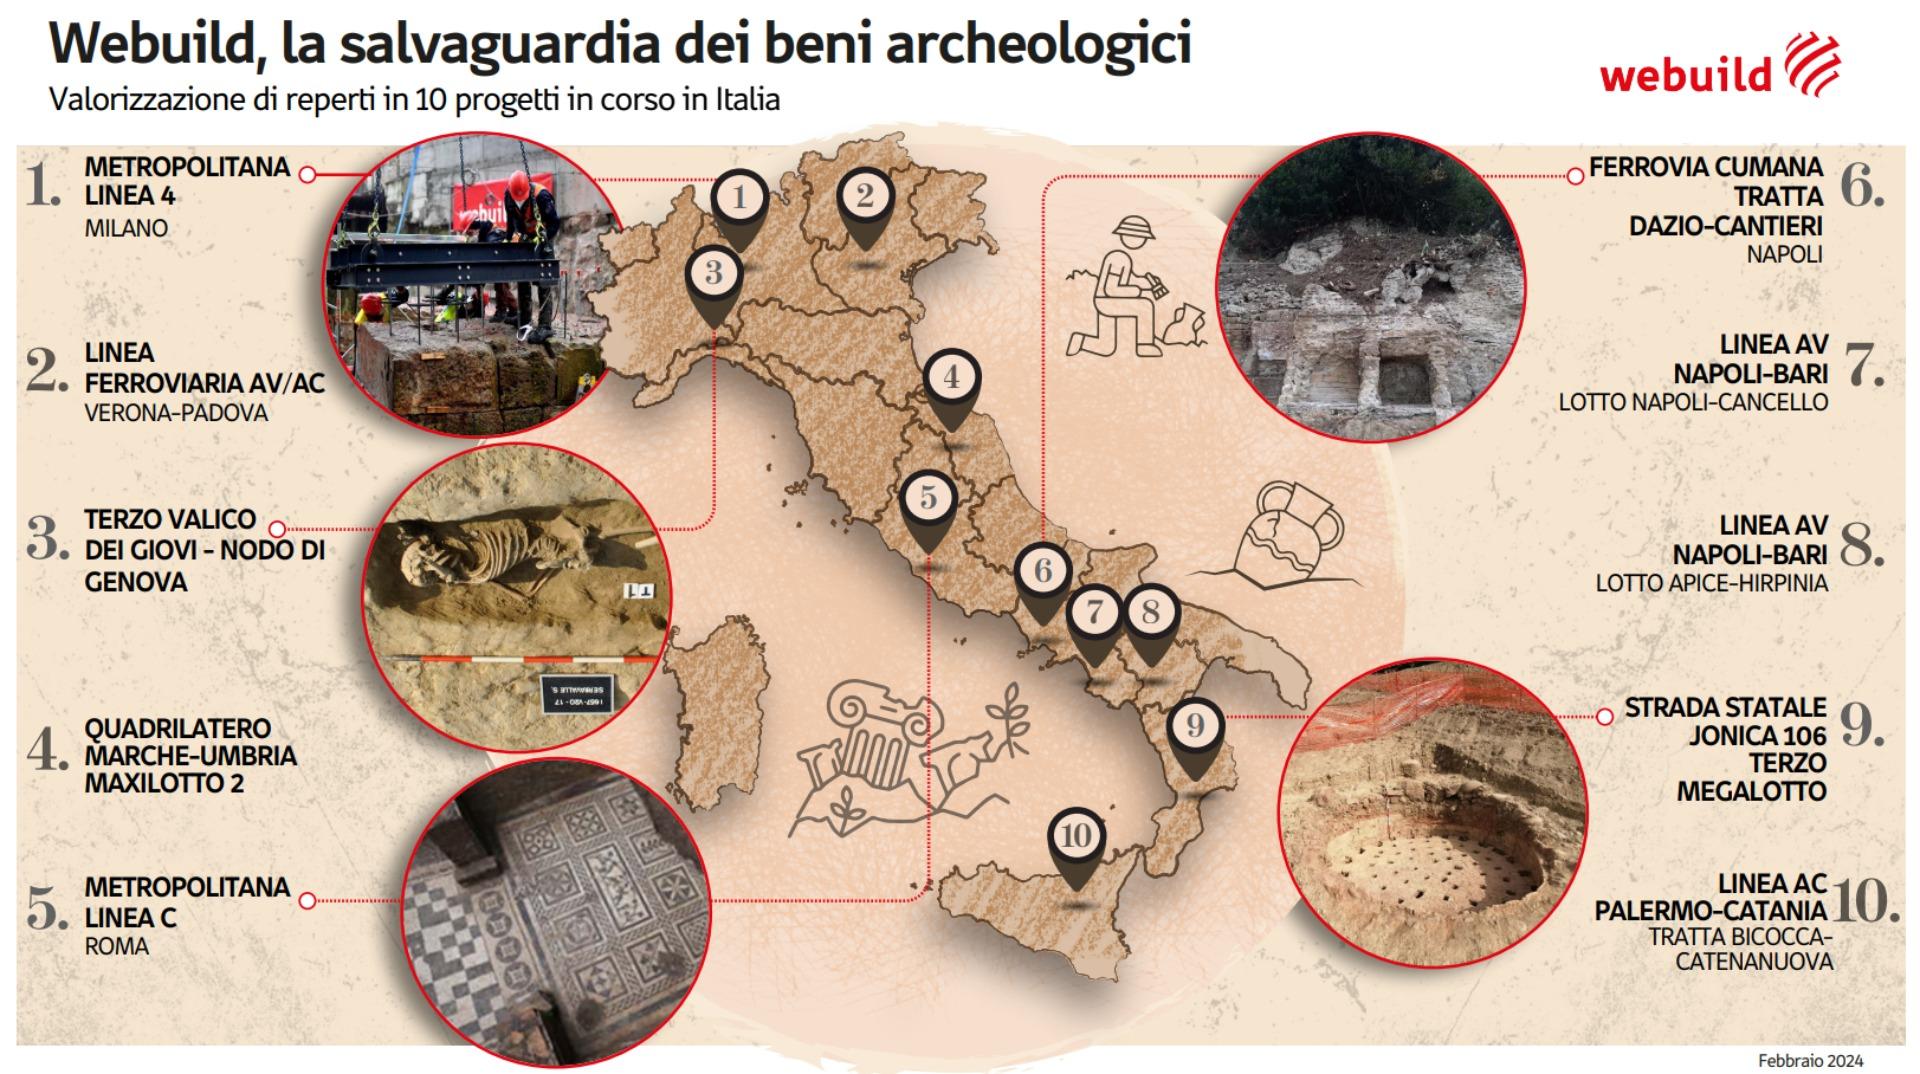 Webuild per la salvaguardia dei beni archeologici